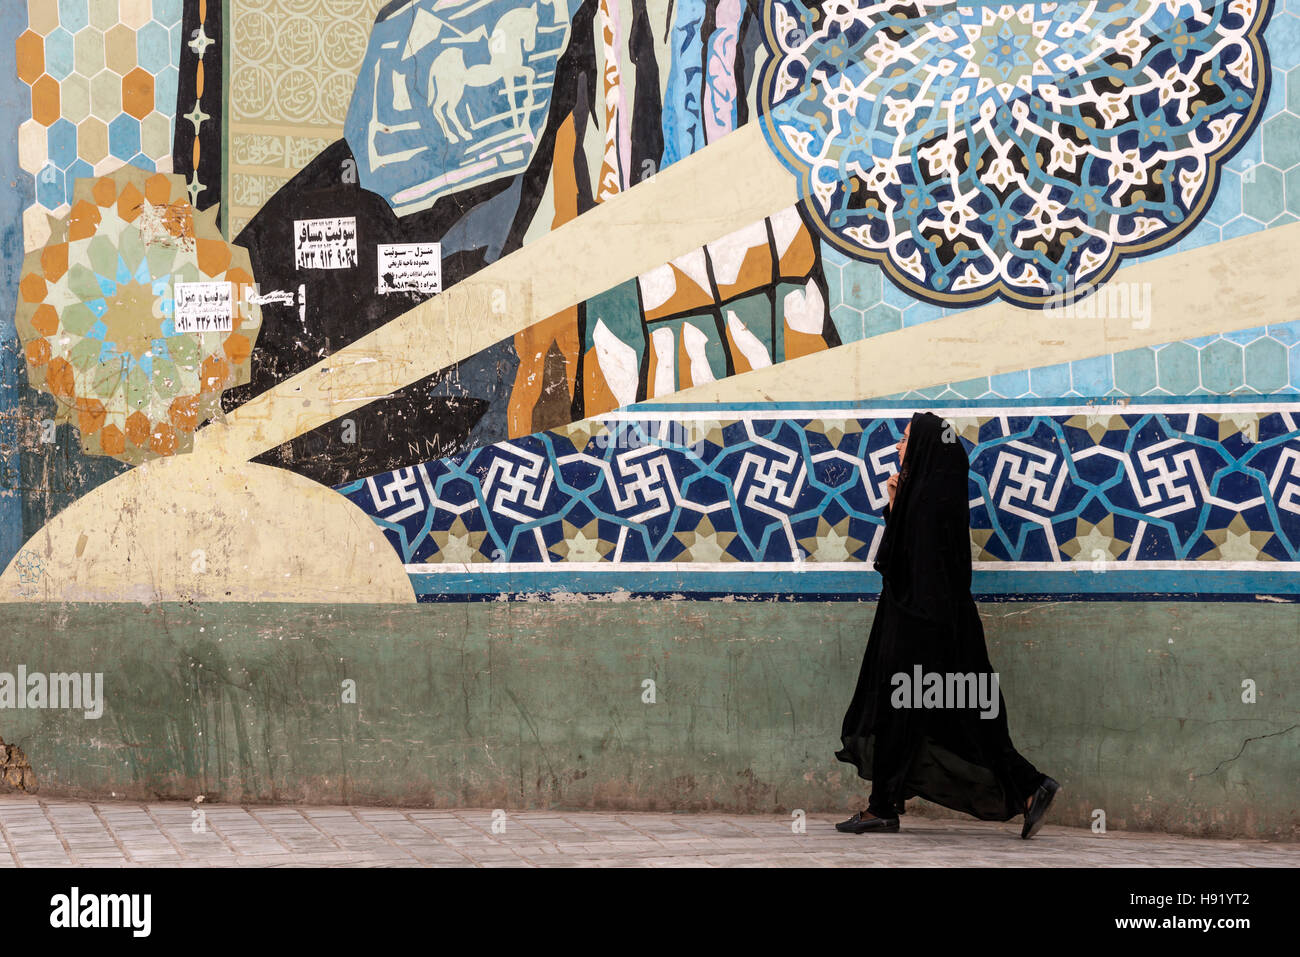 Grafiti and woman in chador Shiraz Iran Stock Photo